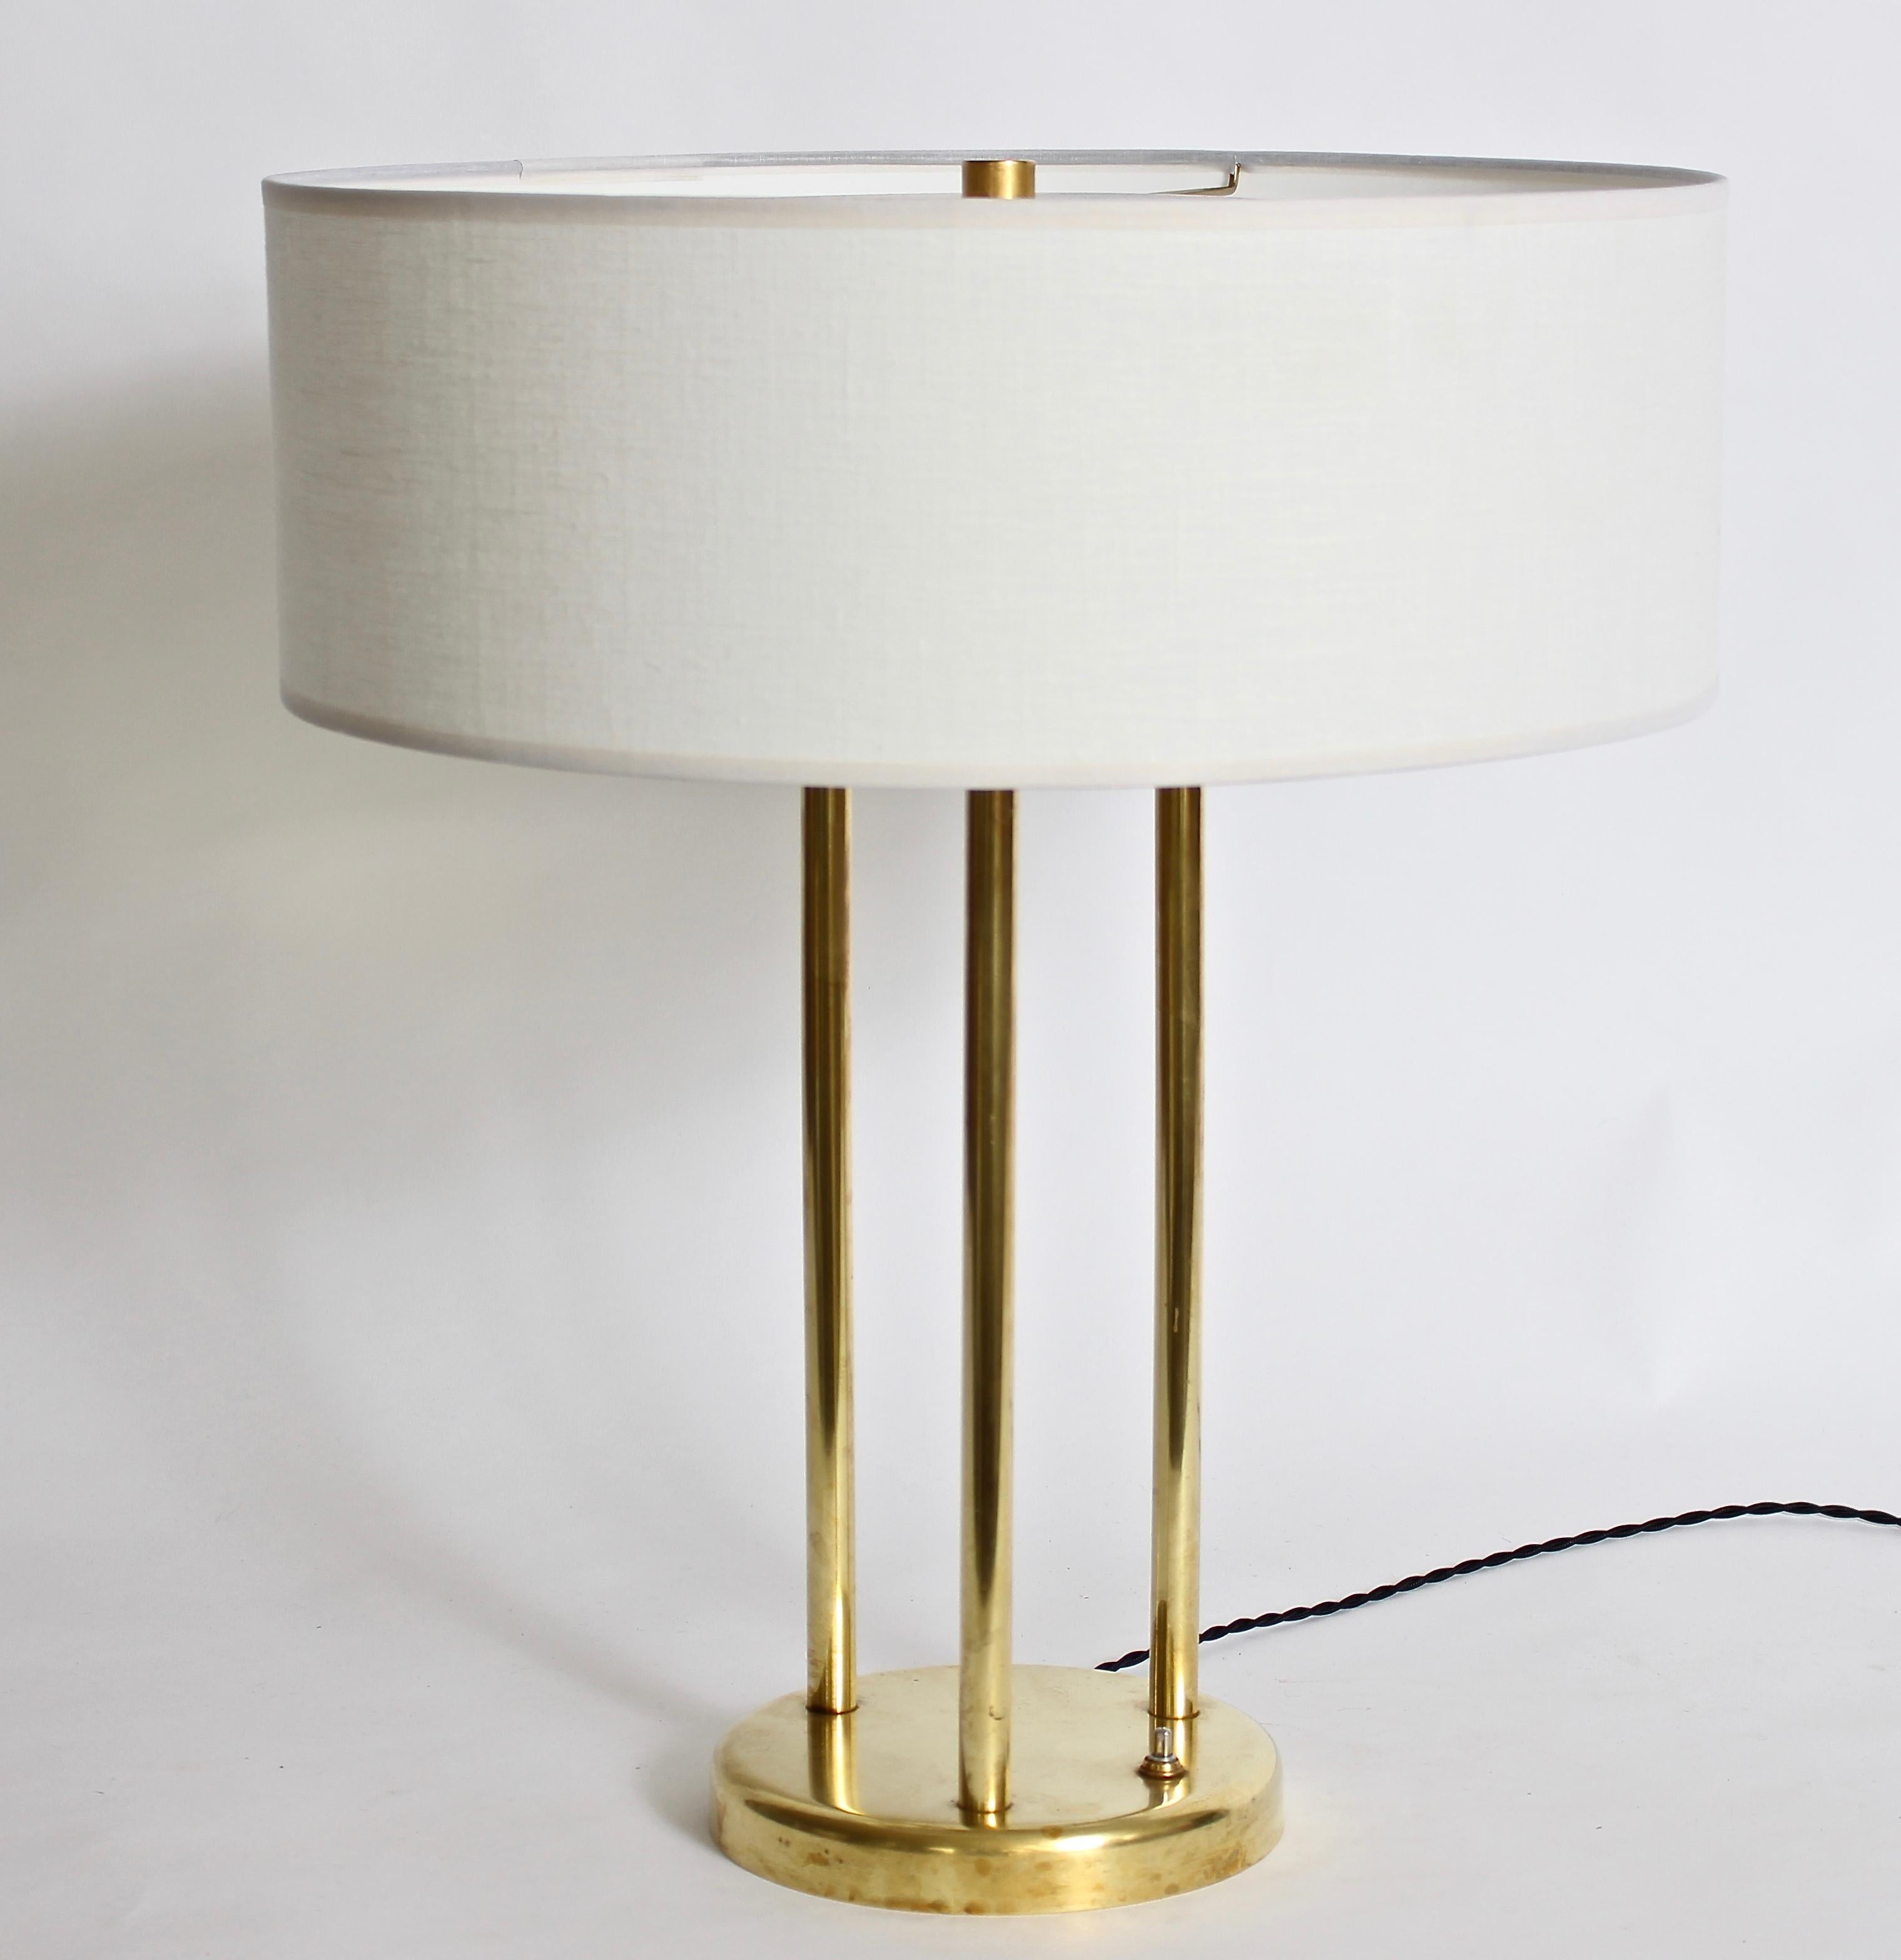 Stewart Ross James pour Hansen Lamp Company lampe de table réfléchissante en laiton. Le cadre à trois colonnes et la base circulaire sont en laiton.  Avec réflecteur à disque supérieur et épi de faîtage d'origine. Triple prise. L'abat-jour est